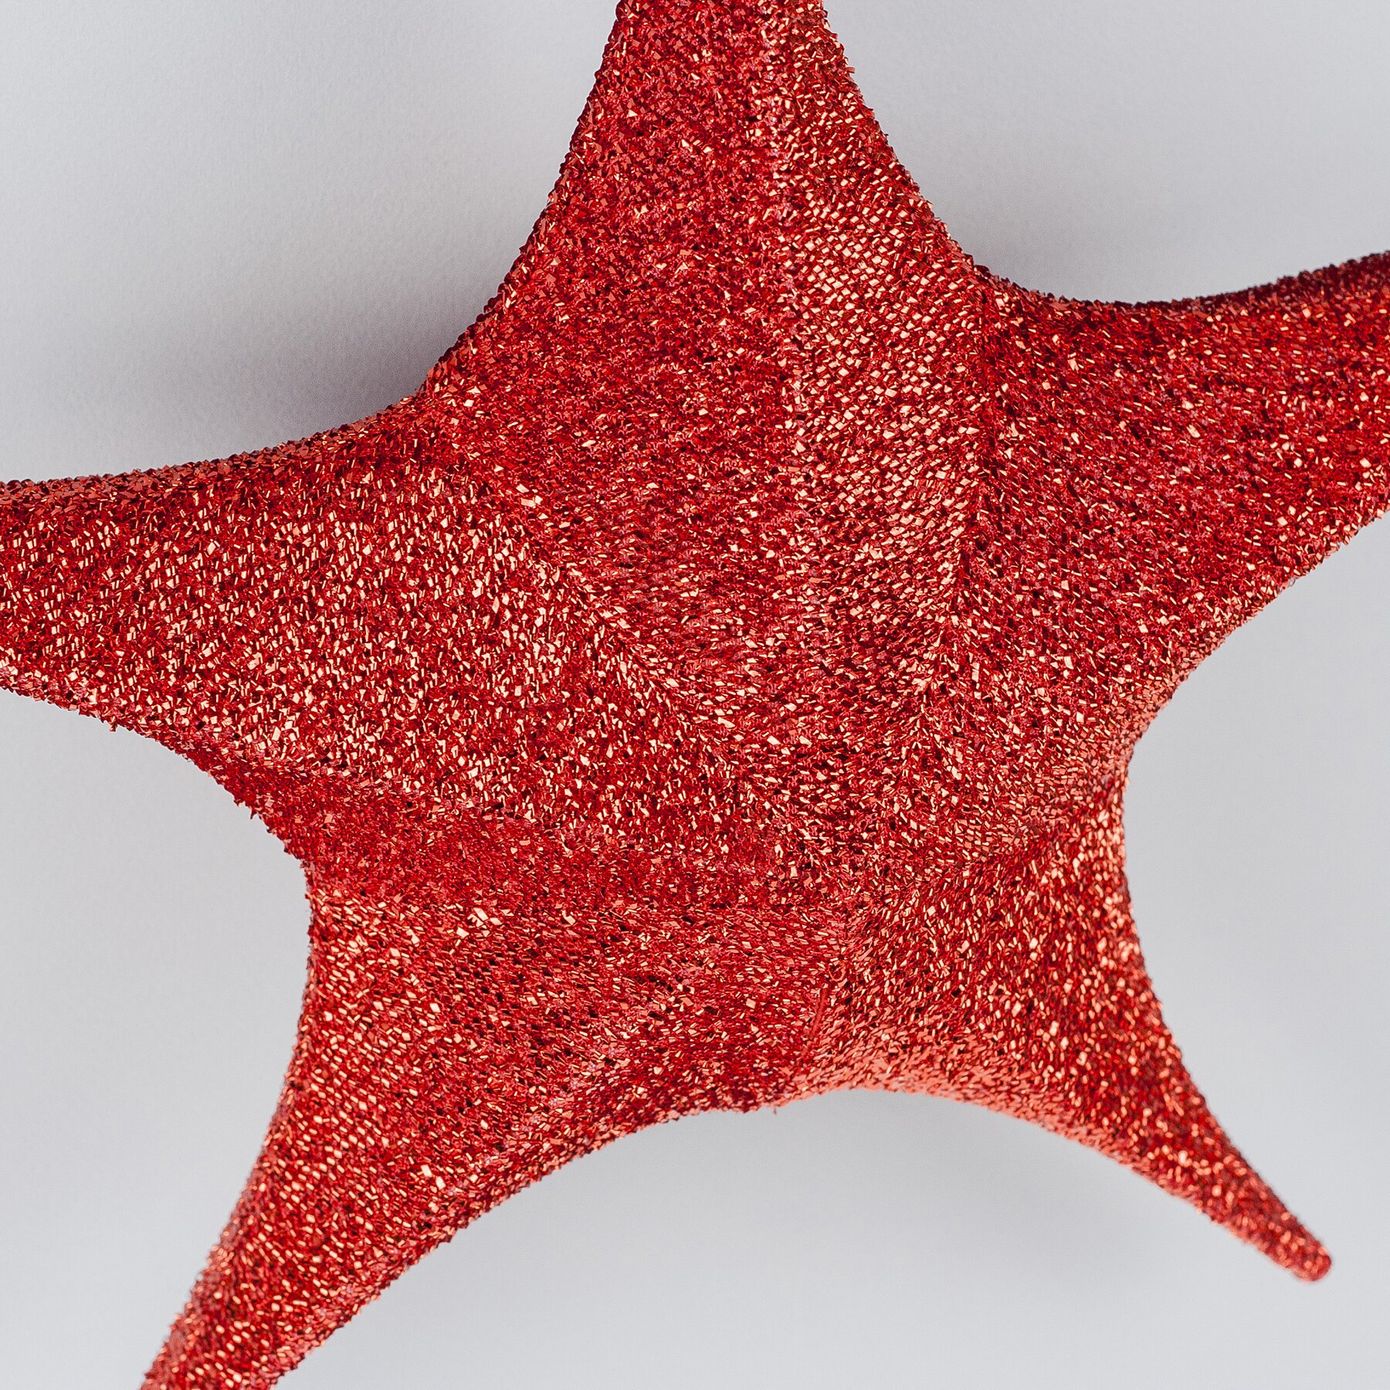 Звезда для декора из ткани, красная, 65 см